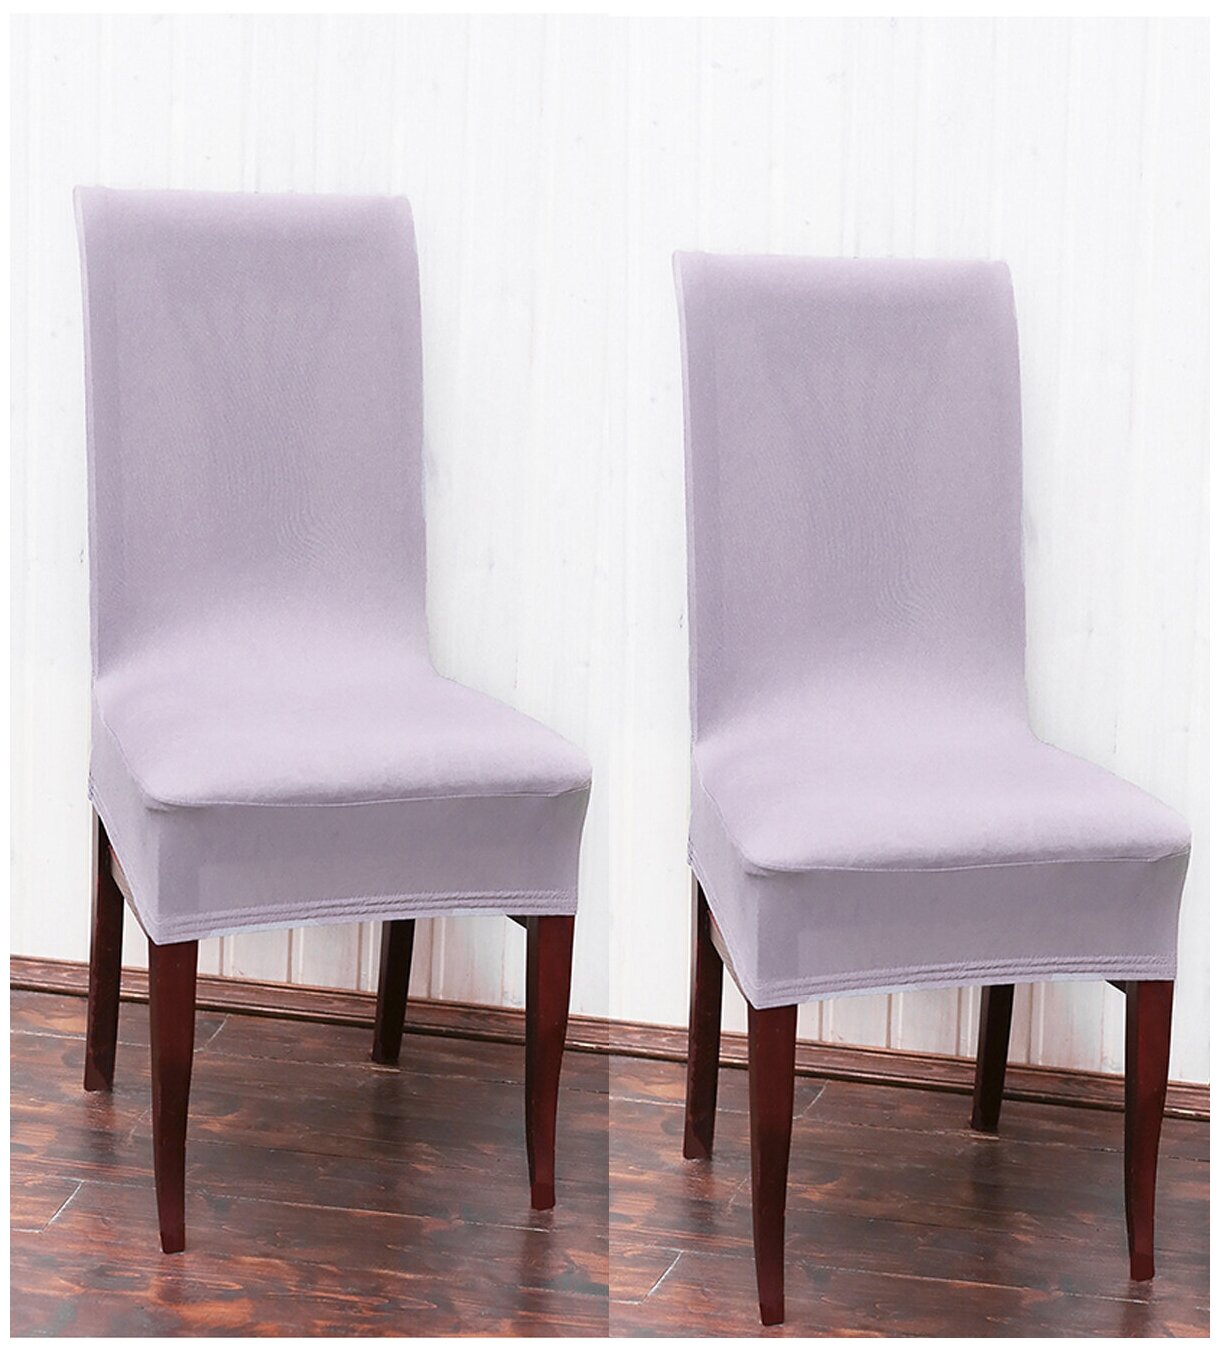 Чехол на стул / чехол для стула со спинкой / Комплект 2 шт / чехлы для мебели / Коллекция "Jersey" Серый